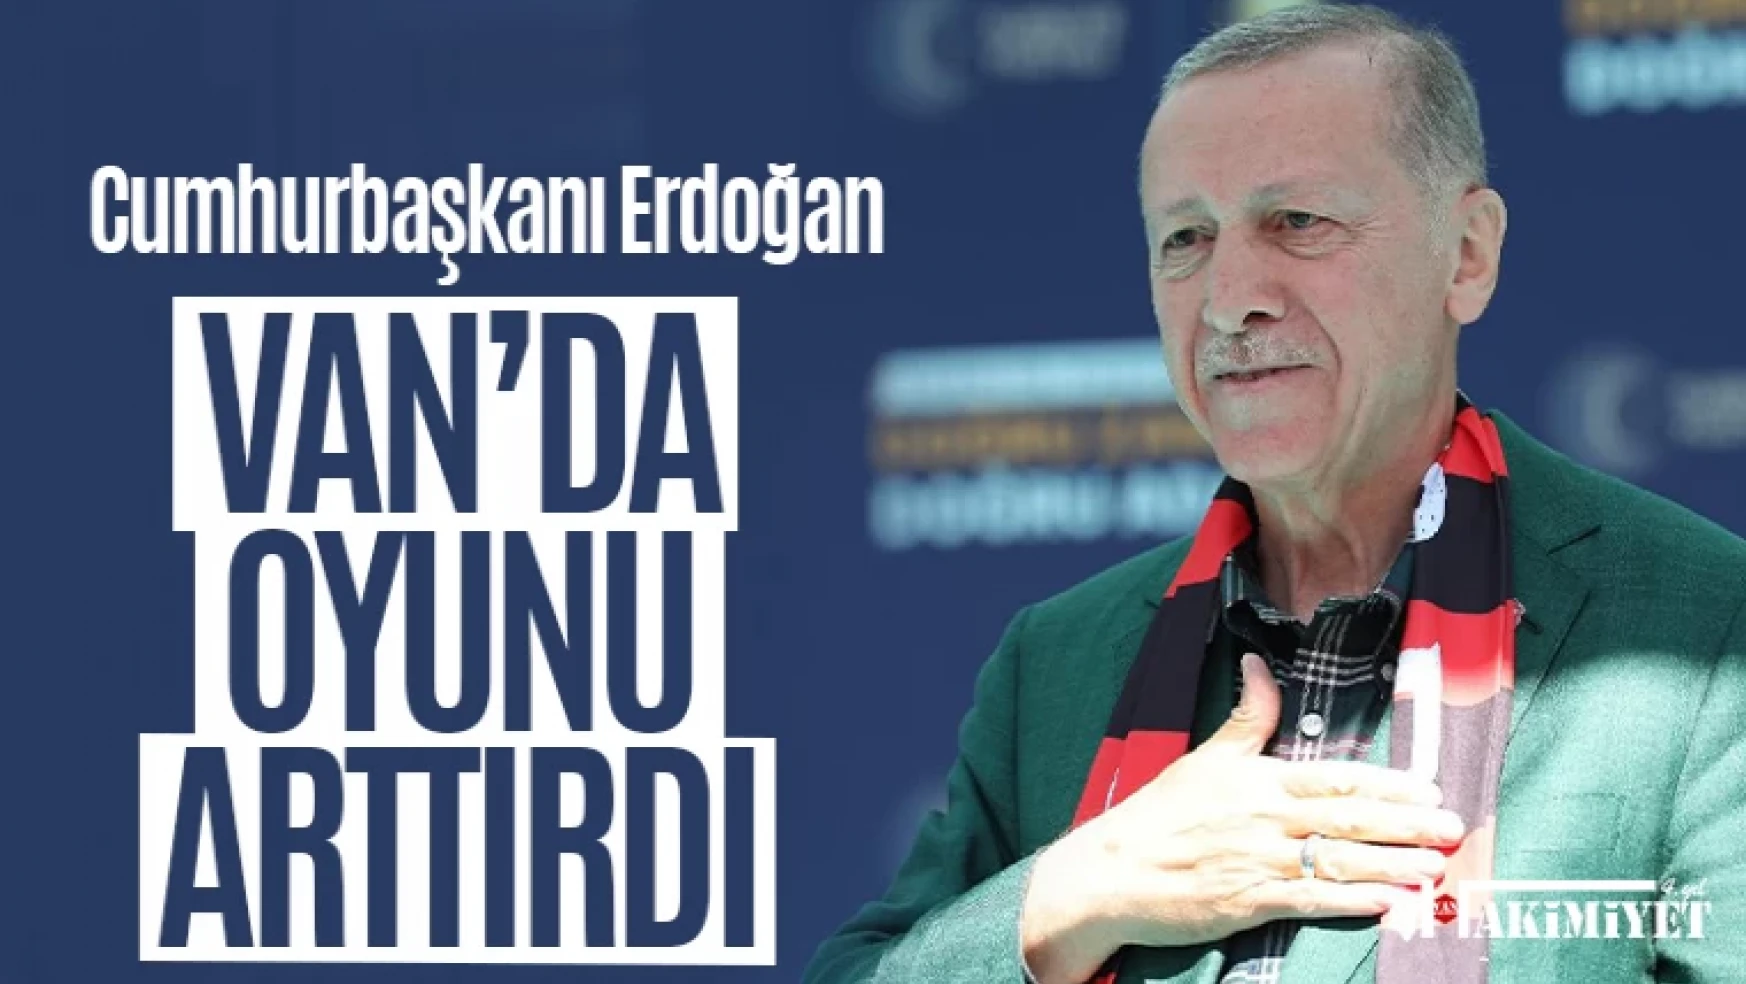 Erdoğan Van'daki oyunu arttırdı